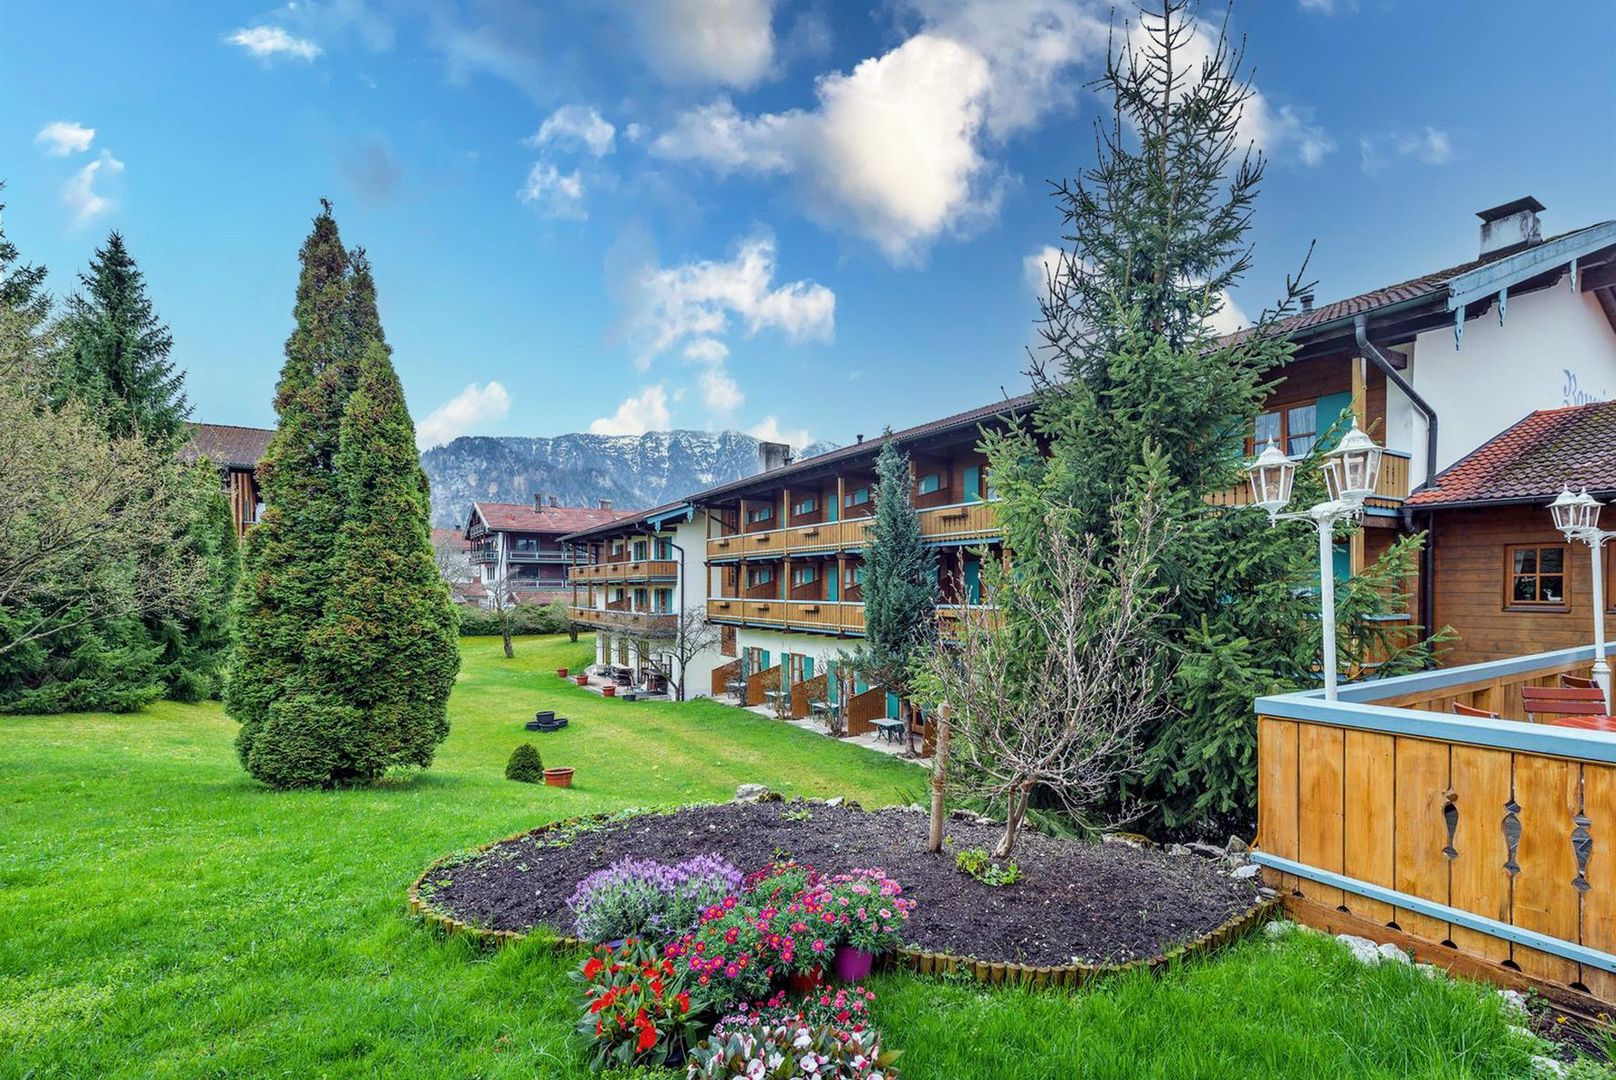 Meer info over Das Bergmayr  Chiemgauer Alpenhotel  bij Wintertrex